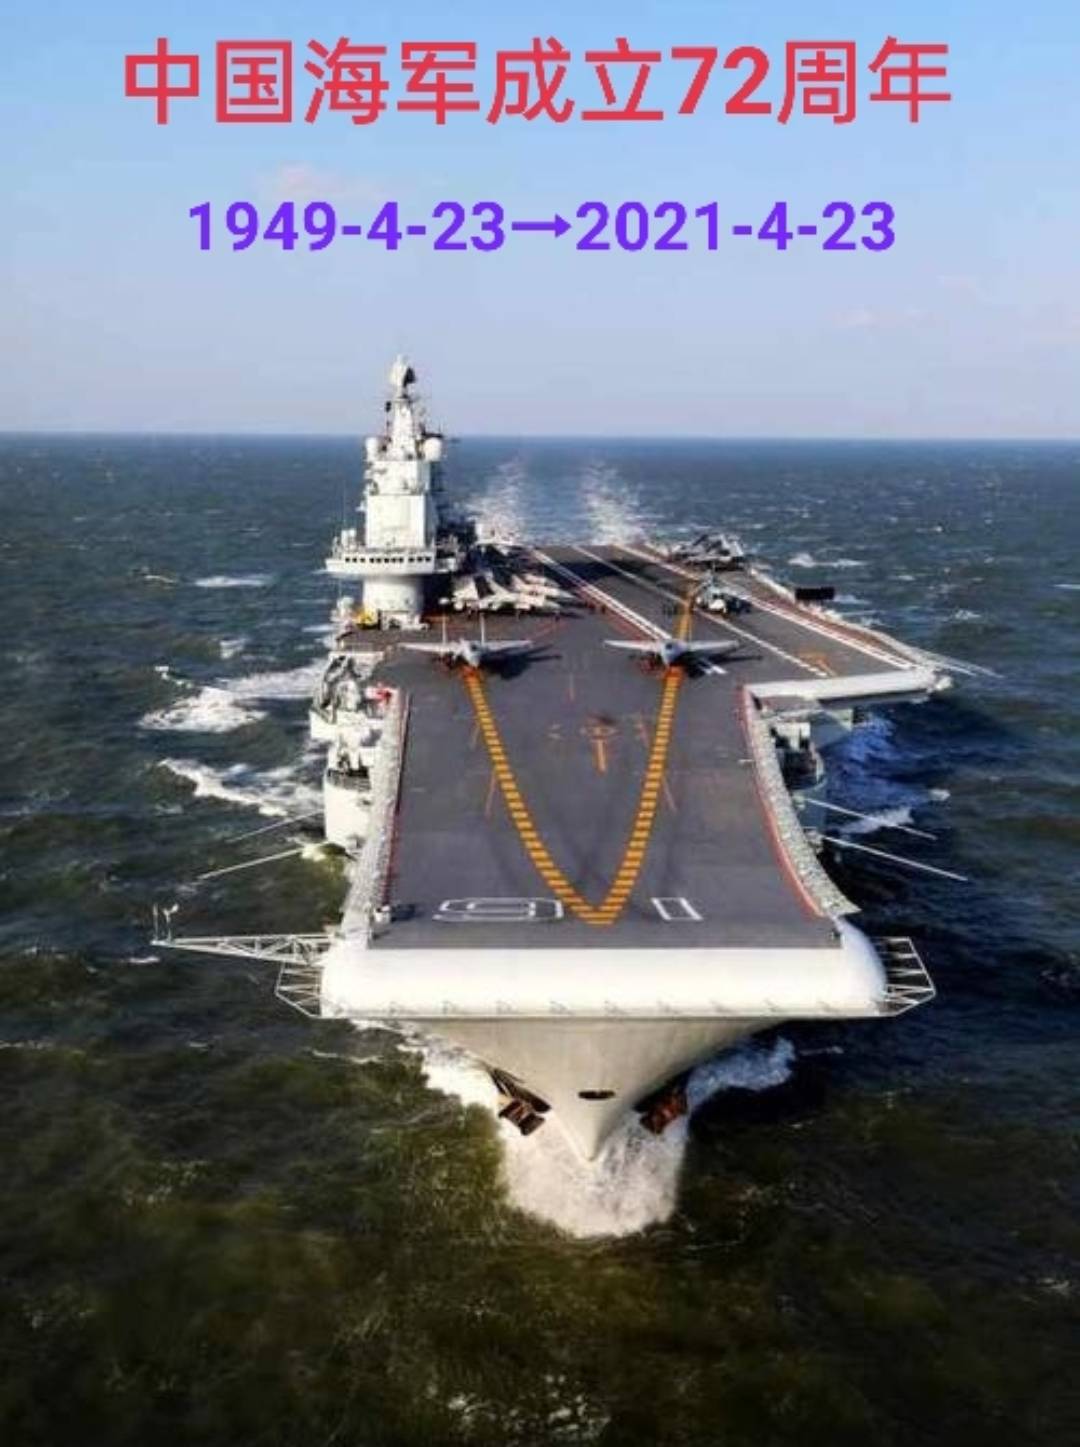 4月23日,让我们一起庆祝人民海军成立72周年!